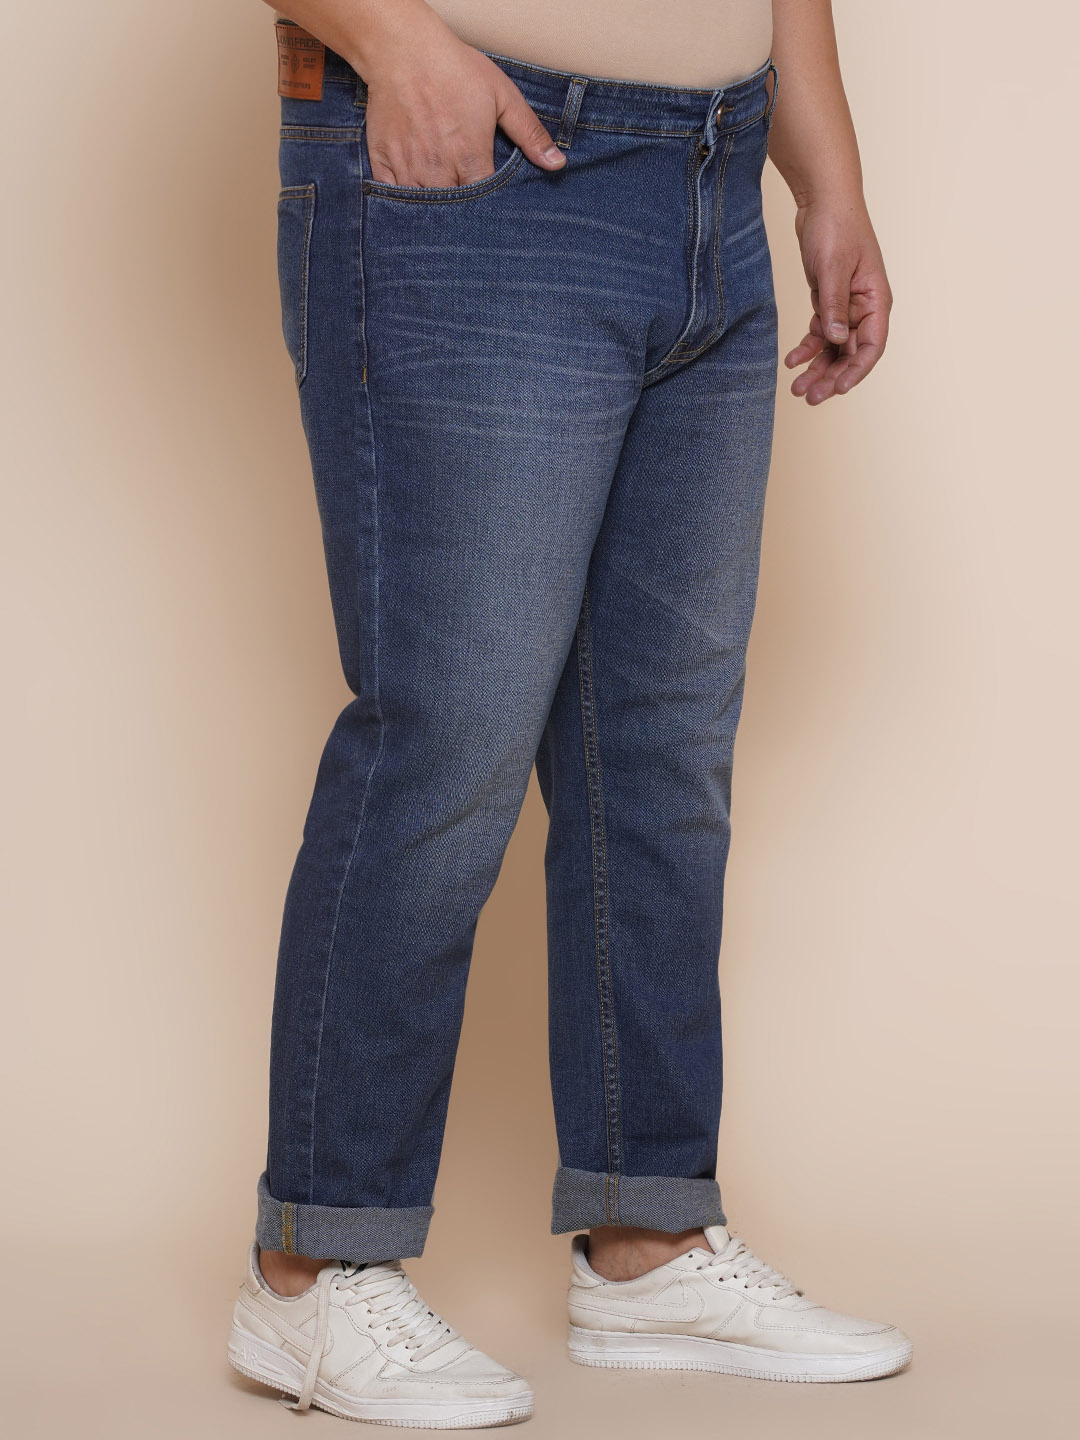 bottomwear/jeans/EJPJ25086/ejpj25086-4.jpg